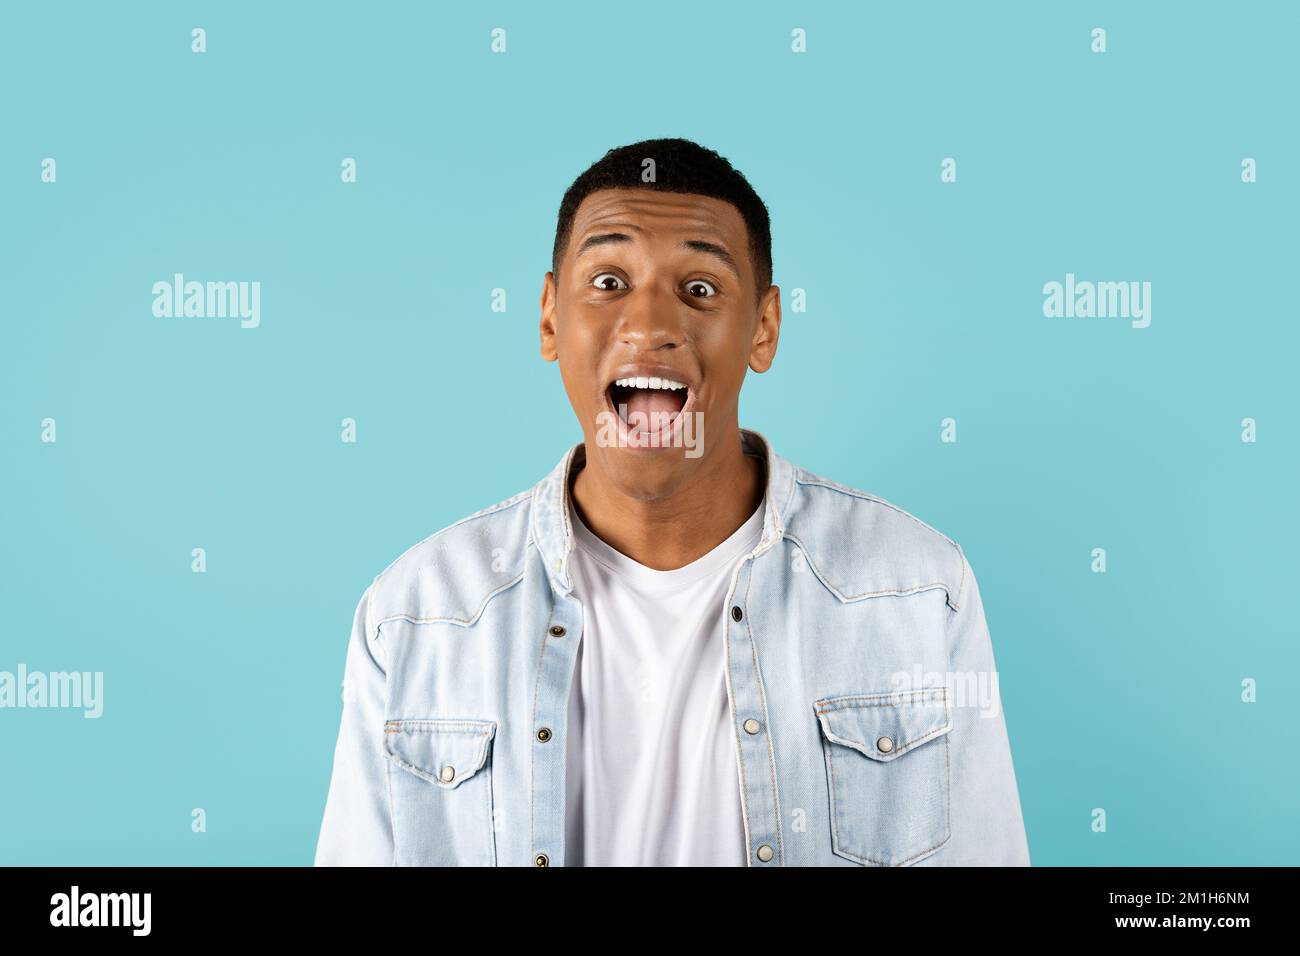 Ein lustiger junger afroamerikanischer Kerl mit offenem Mund, der schreit und in die Kamera schaut, isoliert auf blauem Hintergrund Stockfoto